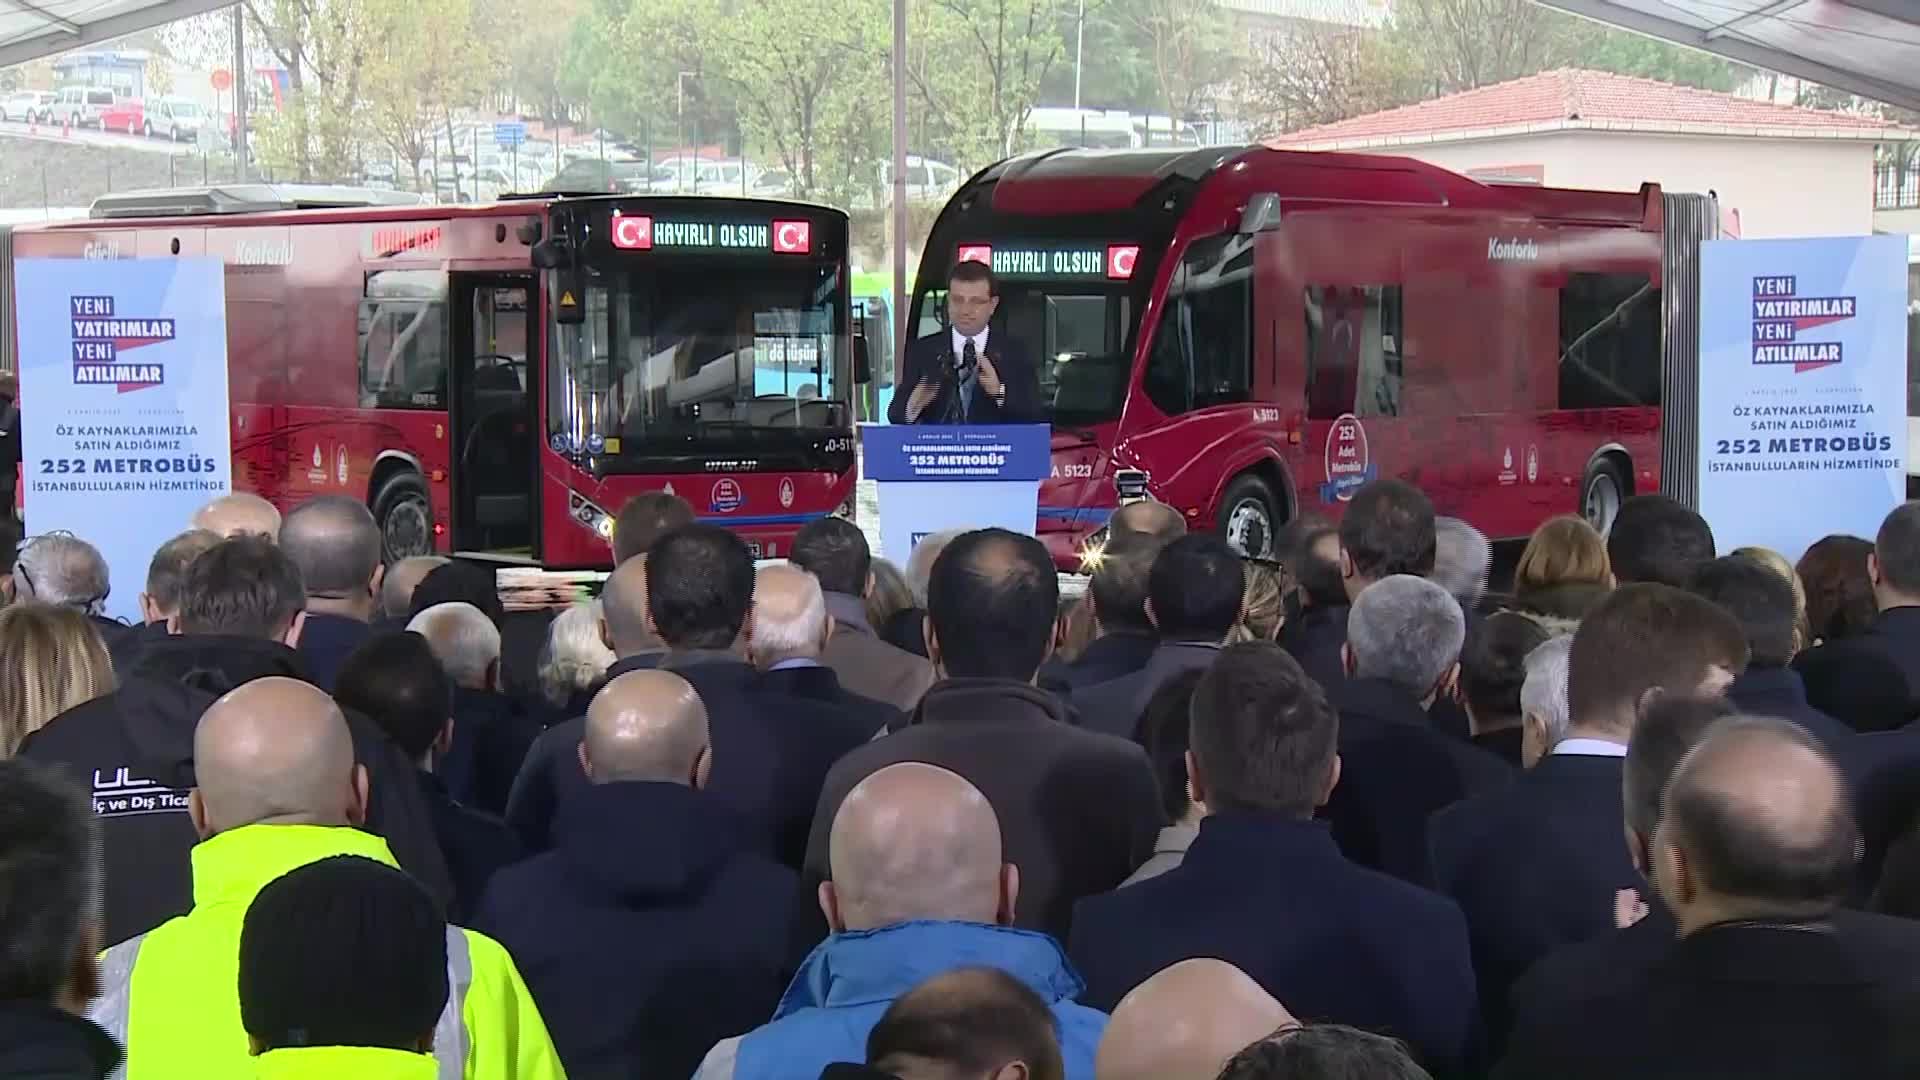 İmamoğlu: 2015 yılından beri otobüs alınmadı, kredisi hazırdı, Erdoğan'a imzalatamadık